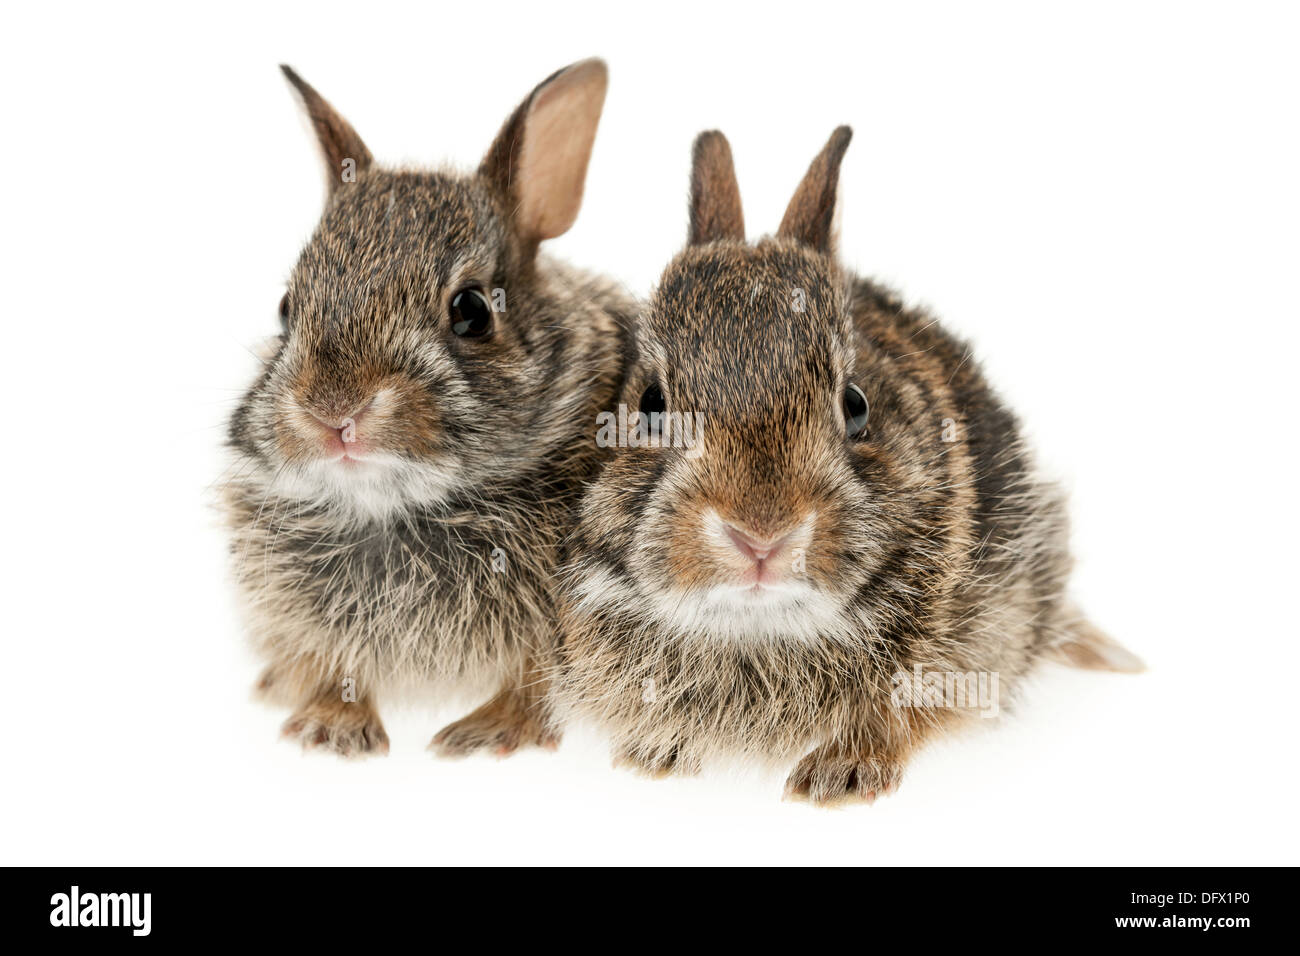 Portrait de deux bébé lapin sauvage isolé sur fond blanc Banque D'Images